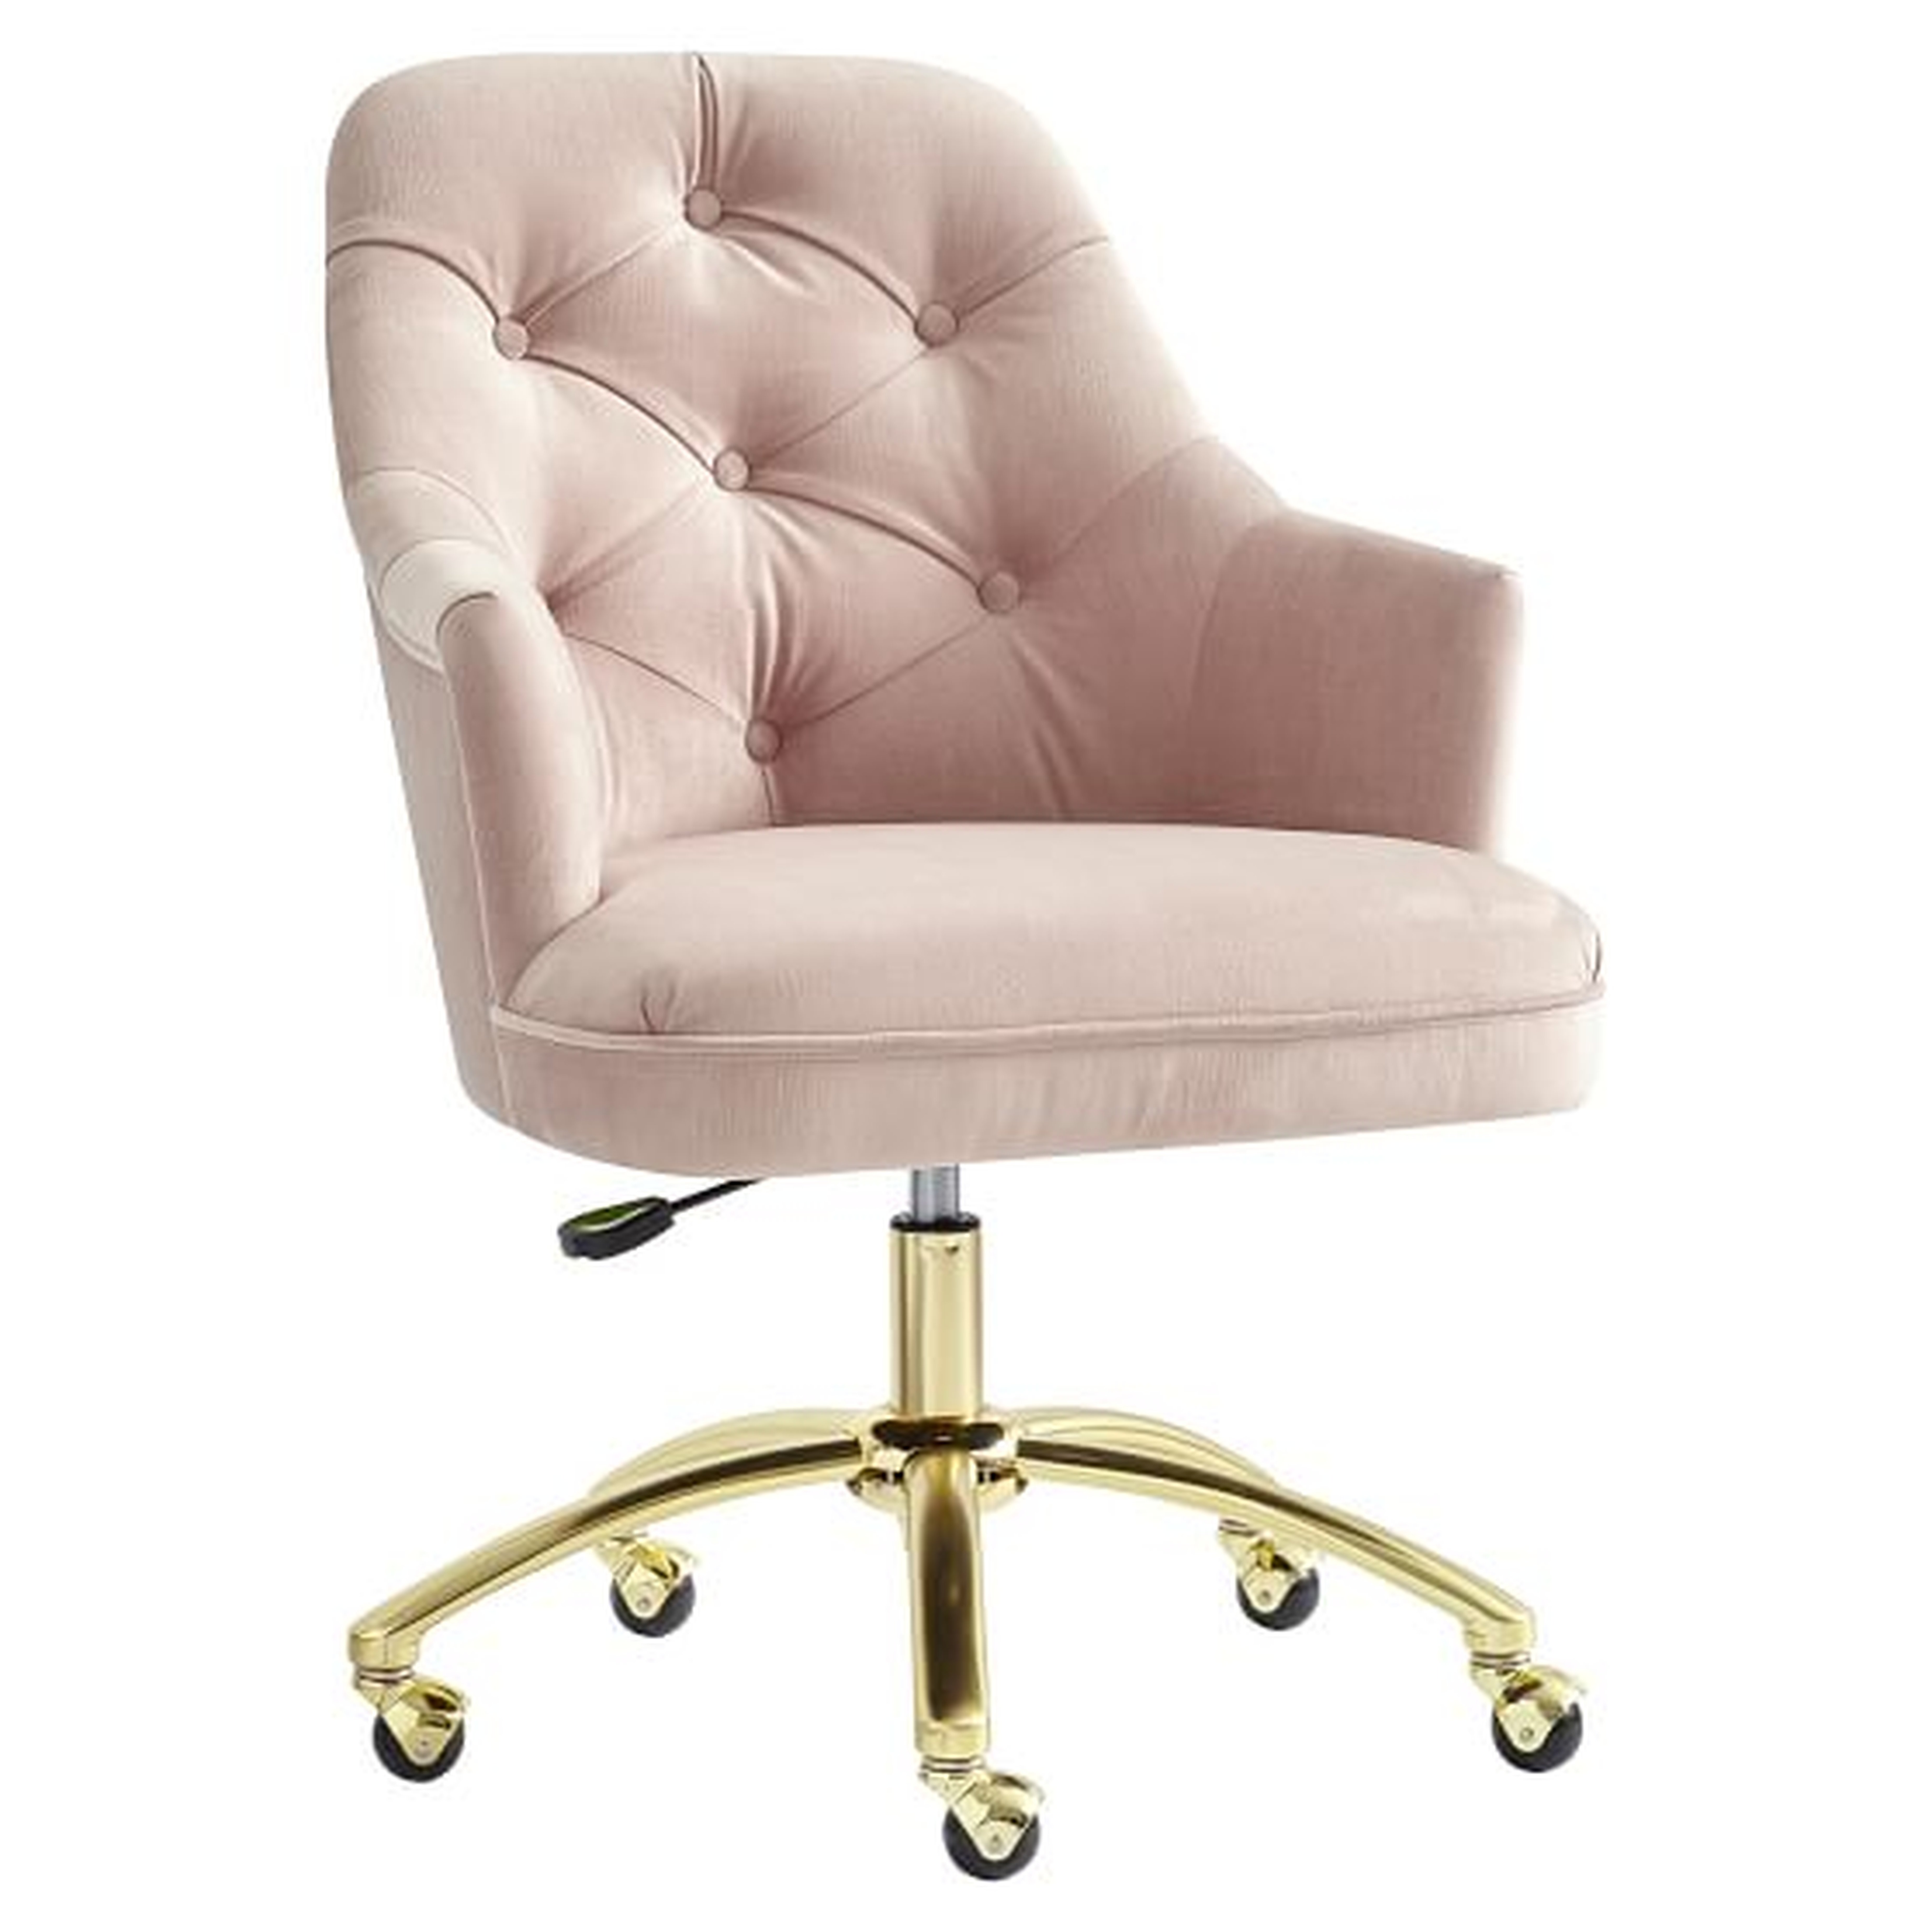 Velvet Tufted Swivel Desk Chair, Dusty Blush - Pottery Barn Teen